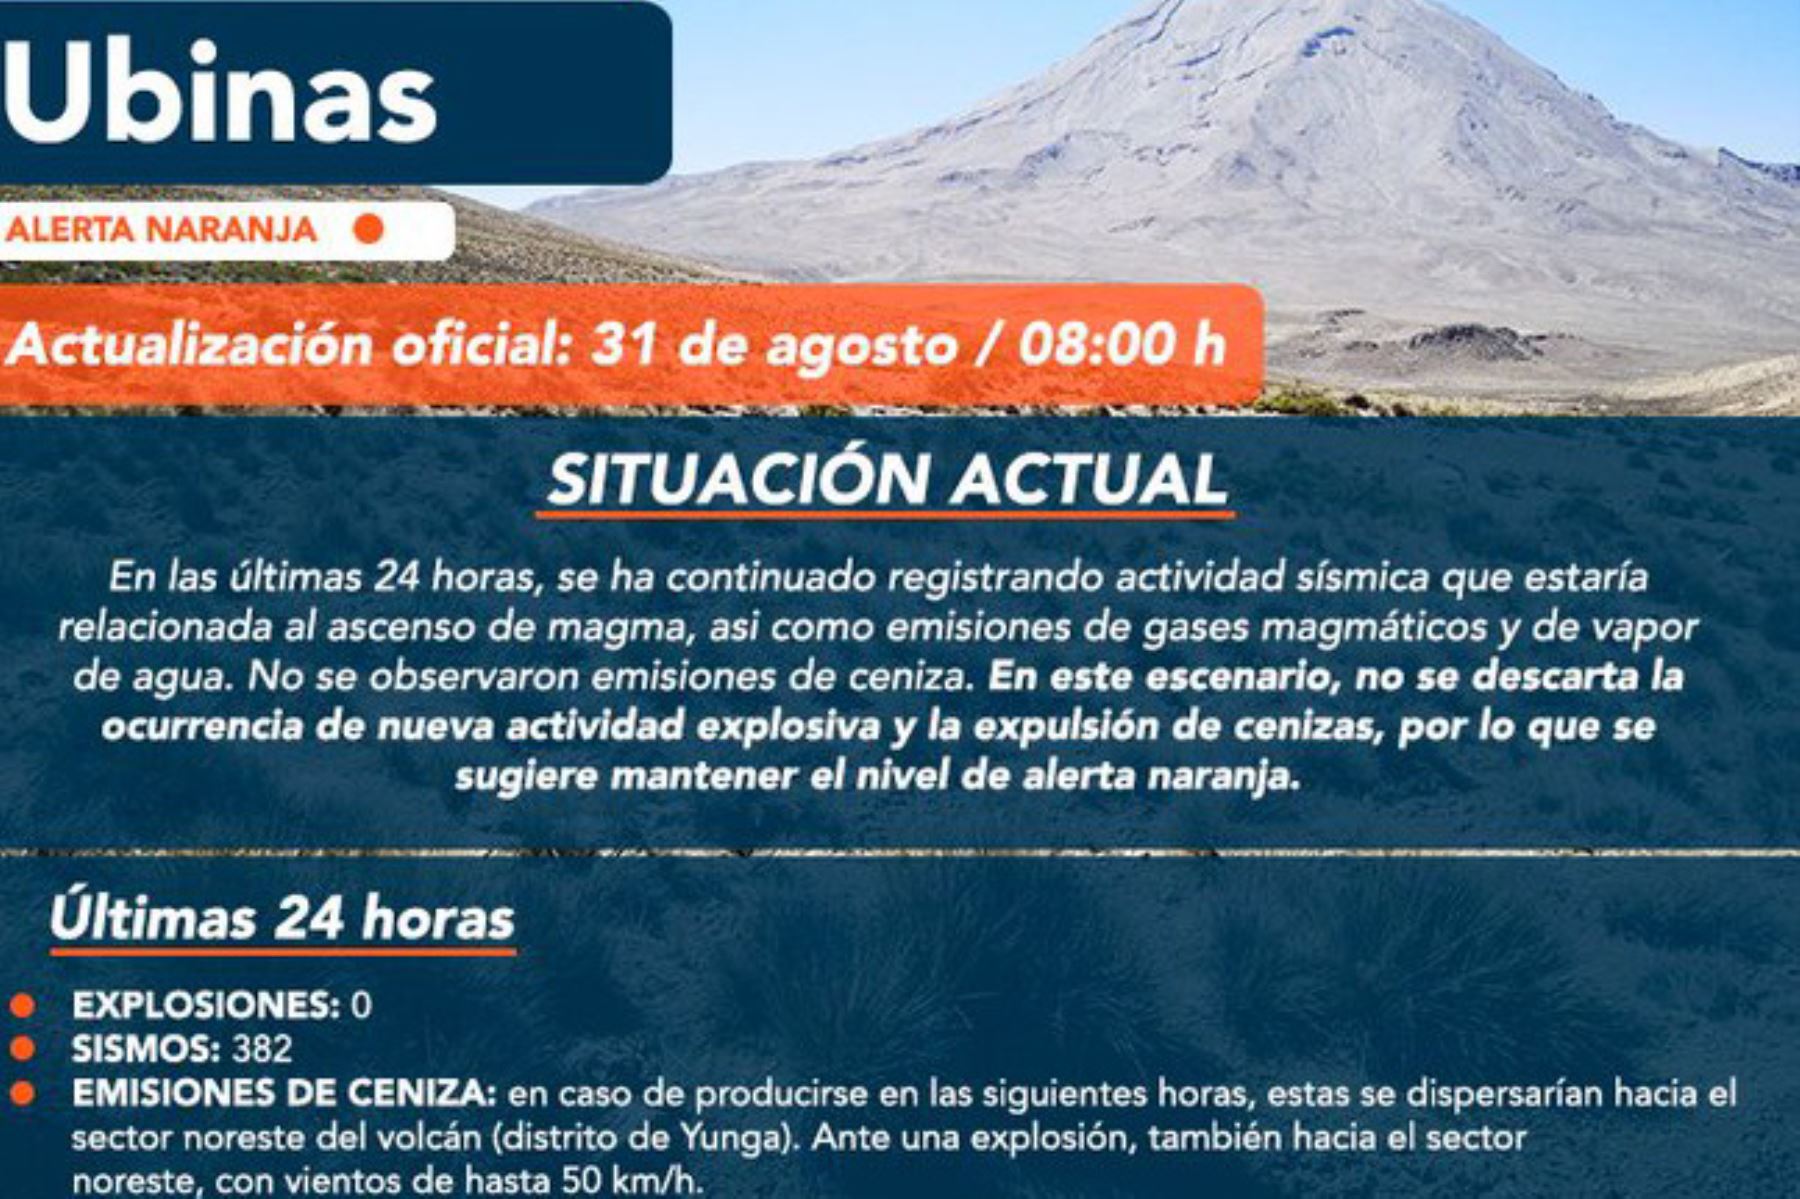 Centro Vulcanológico Nacional mantiene alerta naranja sobre actividad de volcán Ubinas, ubicado en la región Moquegua.